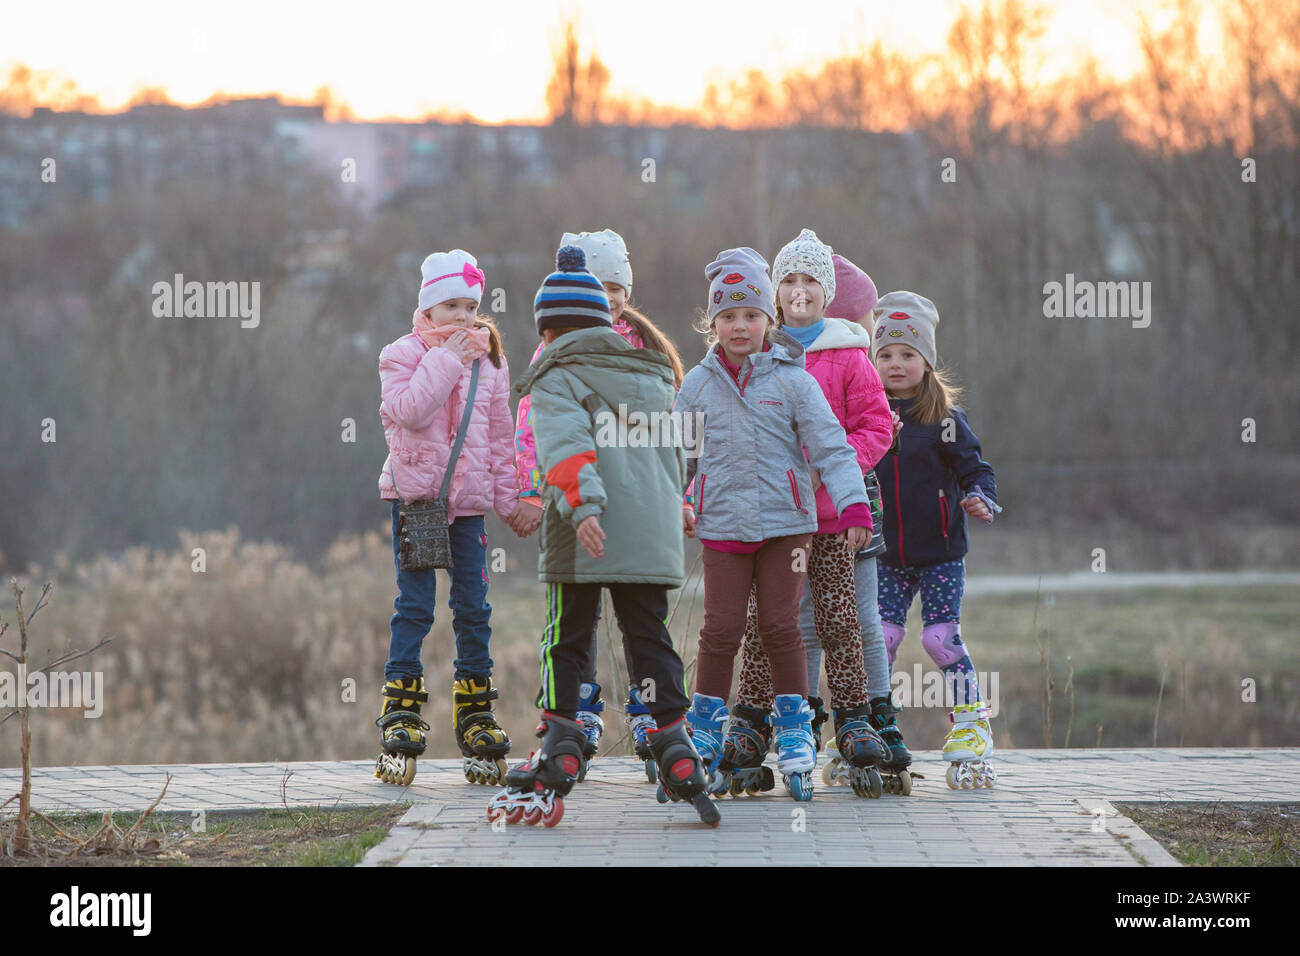 Petite Fille En Rollerblading Dans La Protection D'automne Dans Le Parc  Photo stock - Image du joie, exercer: 247506688